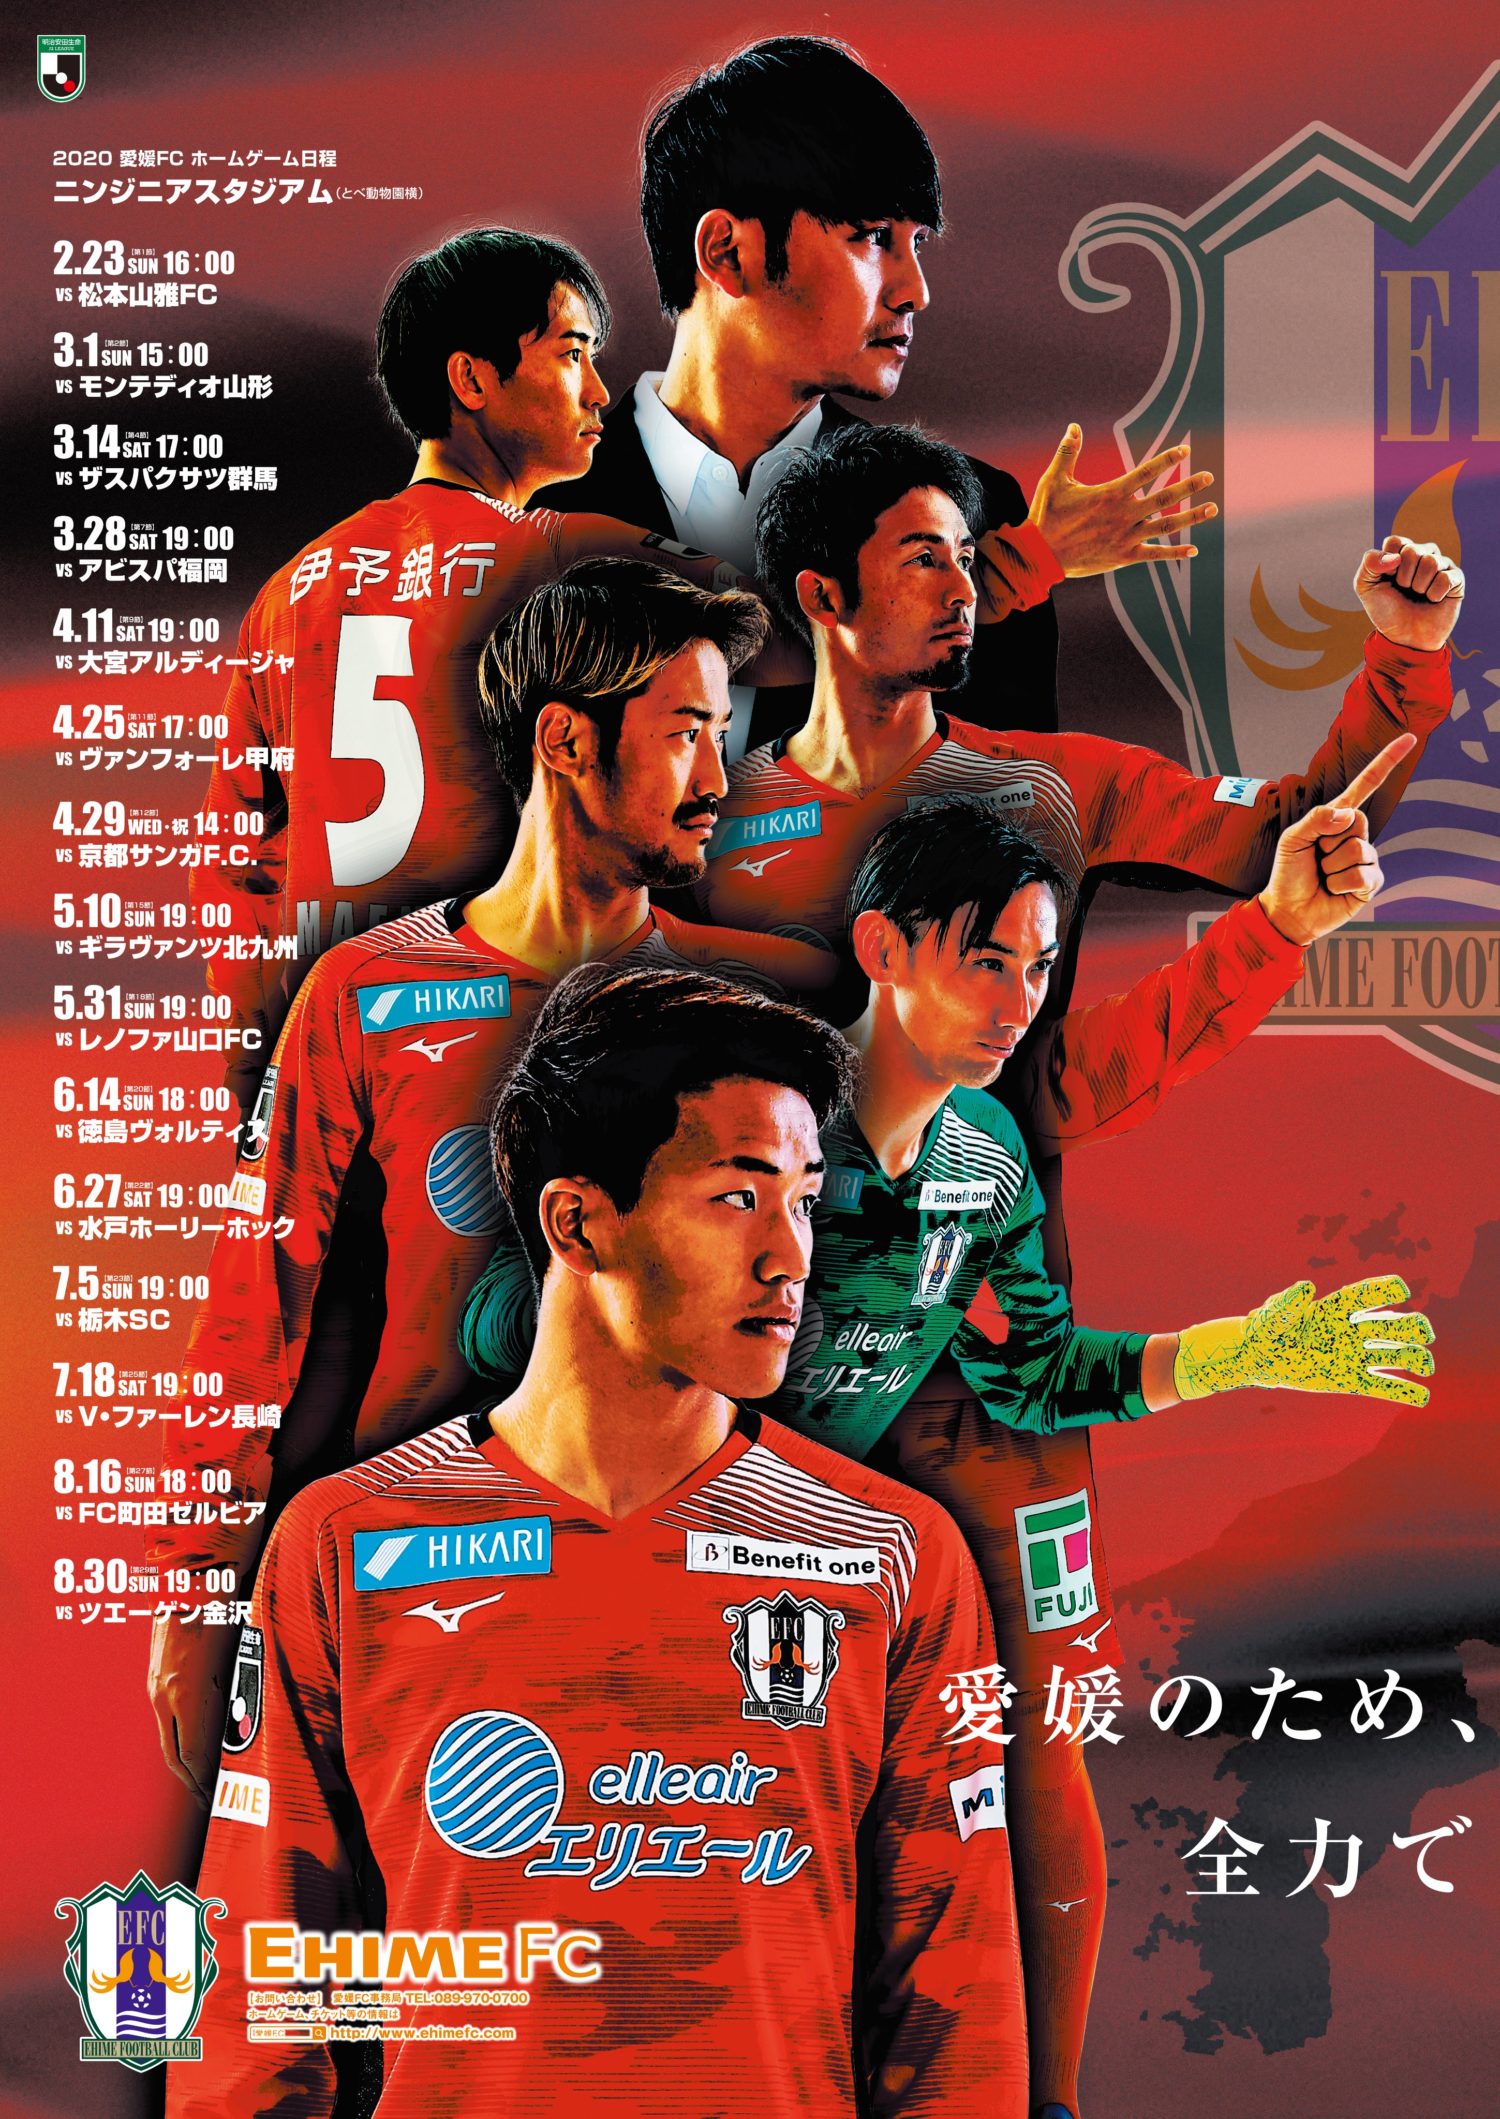 Koji Yamase プロサッカー選手 元日本代表 レノファ山口fc所属 Yamase Family Website